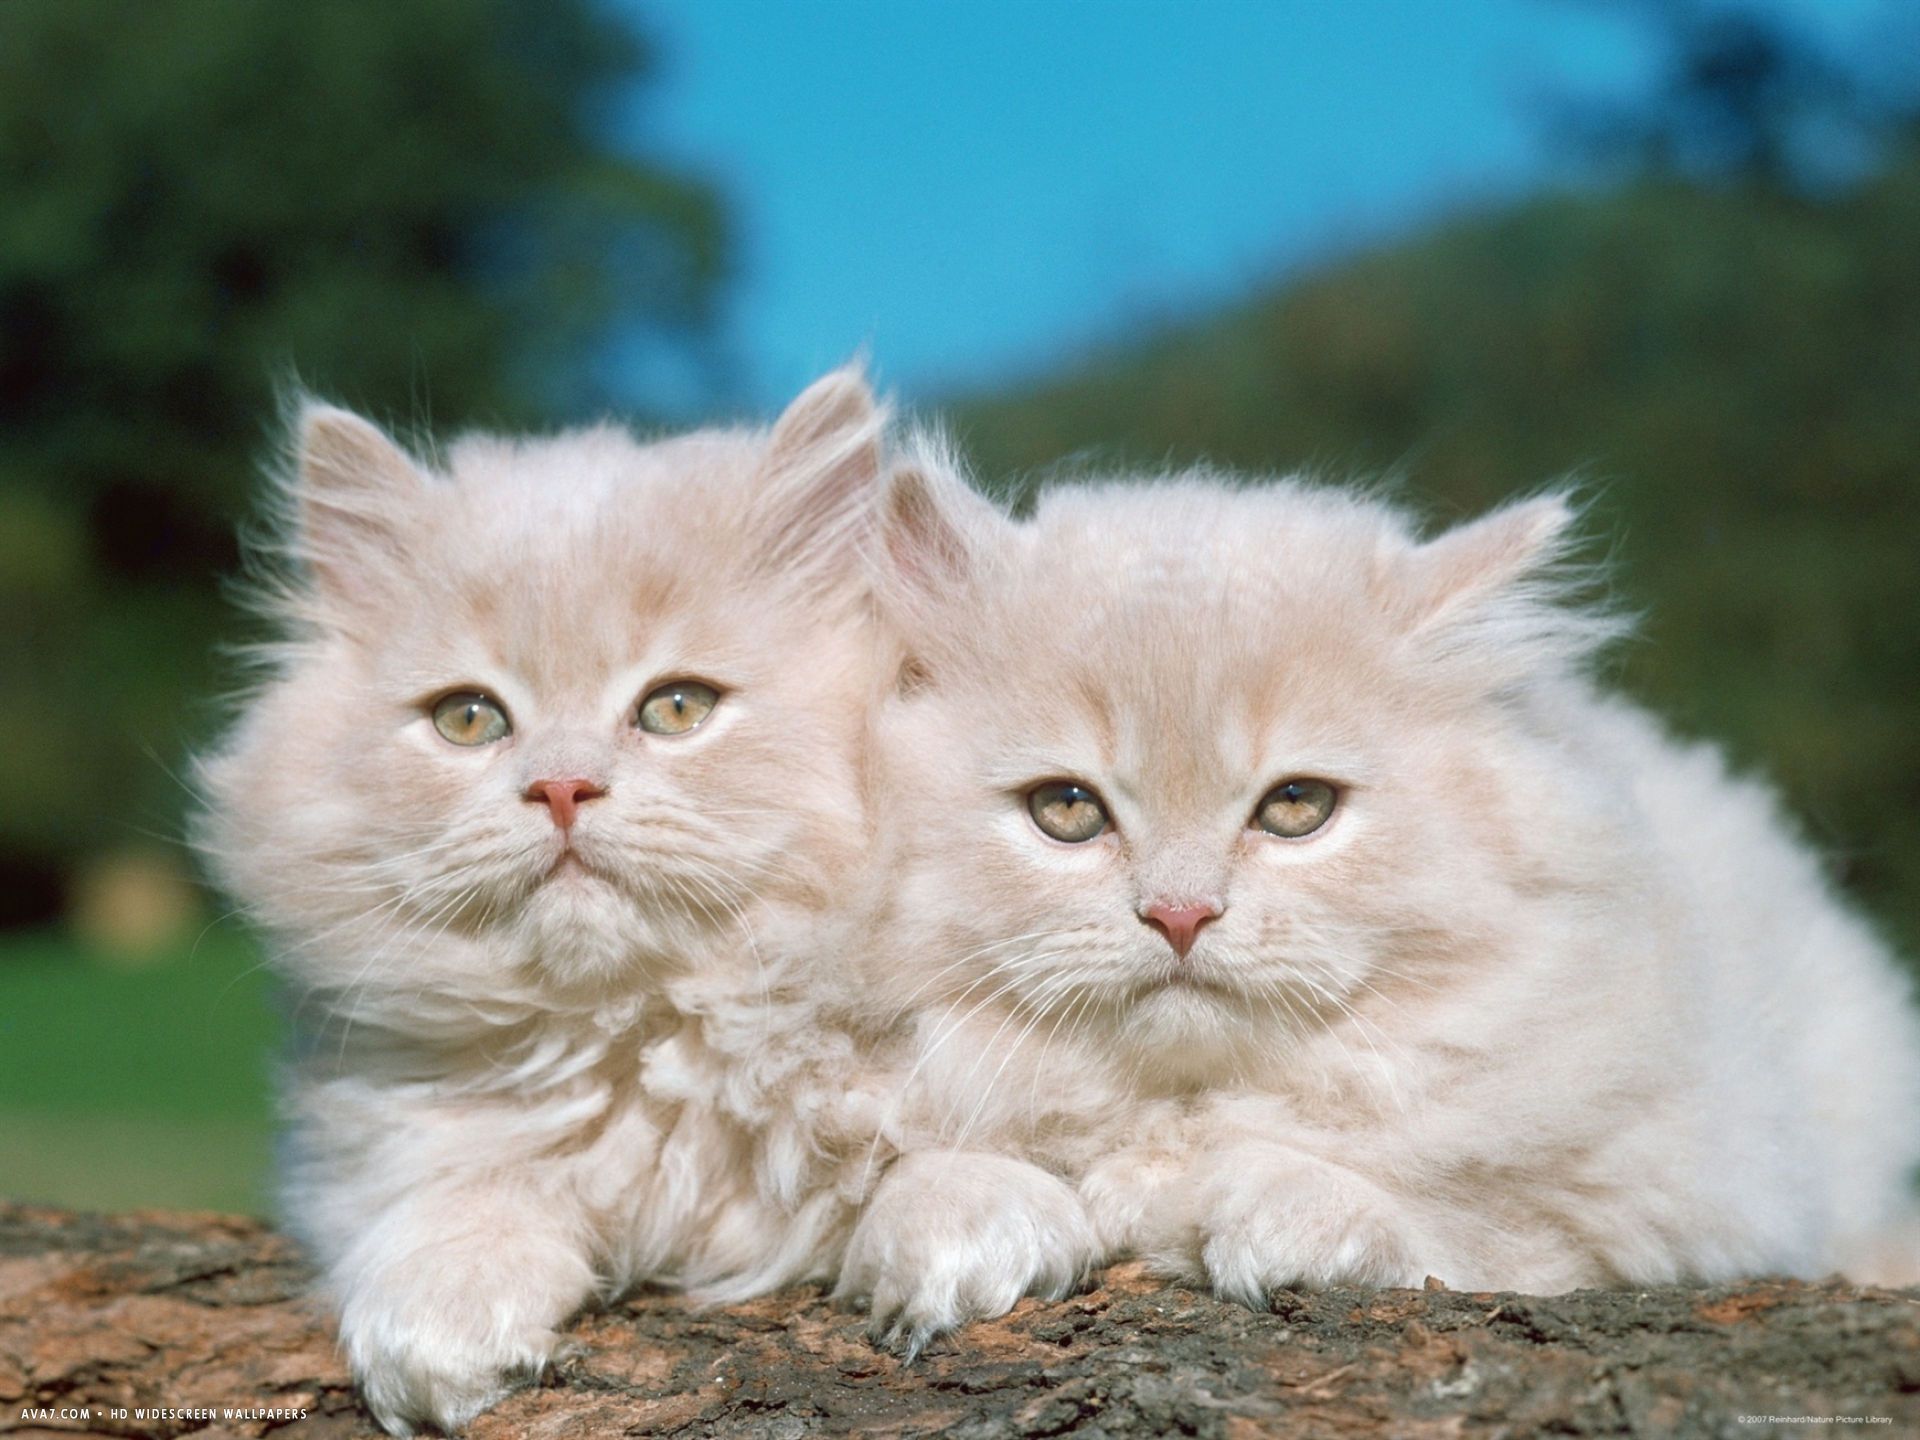 two persian cats kittens felis catus. persian cat wallpaper. Blonde cat, Cats, Cute cats and kittens